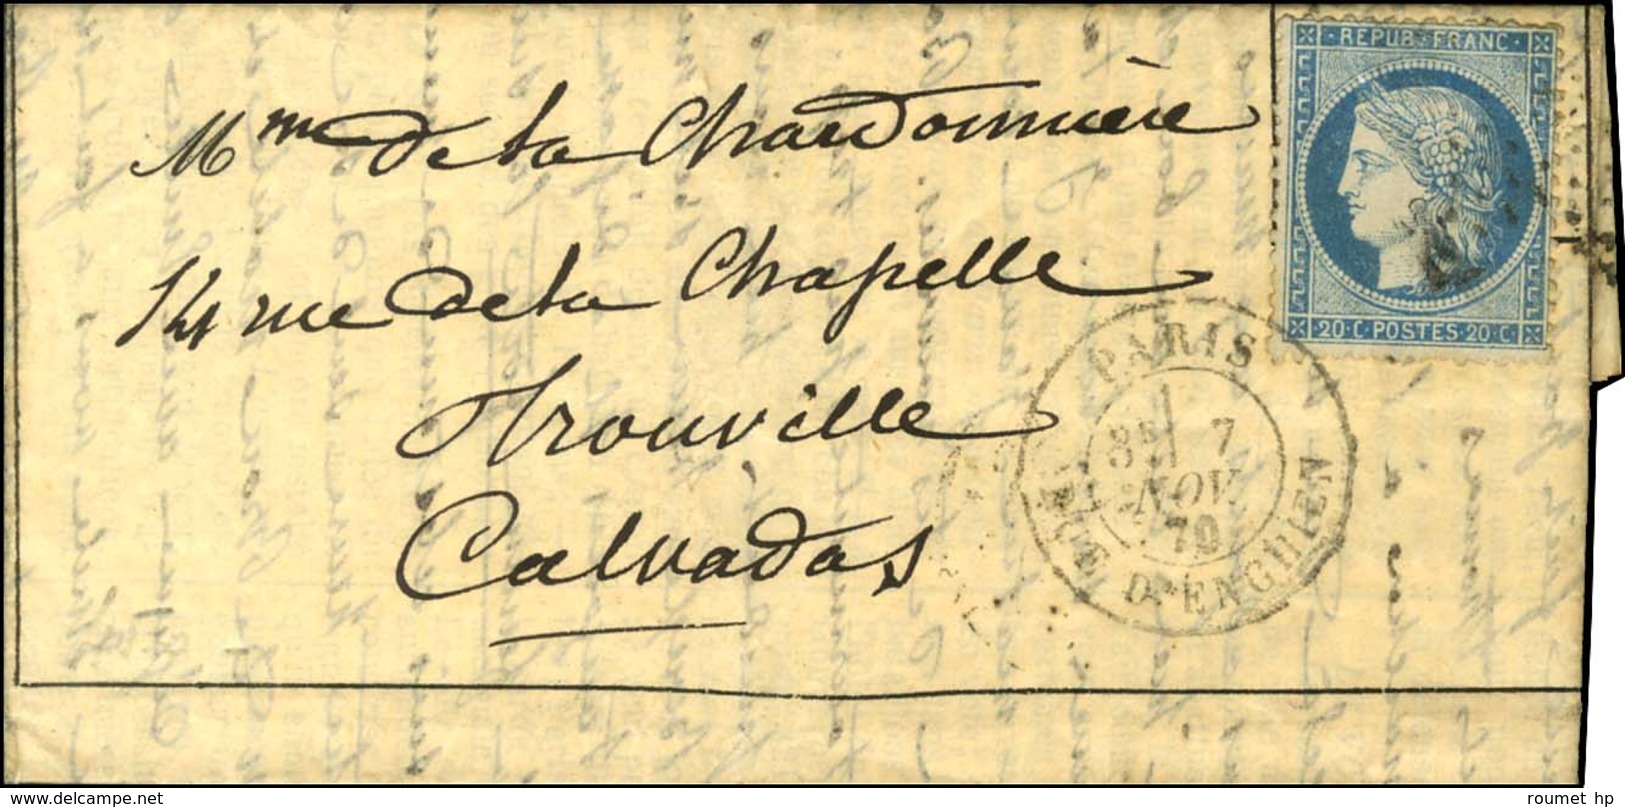 Etoile 4 / N° 37 Càd PARIS / RUE D'ENGHIEN 7 NOV. 70 Sur Gazette Des Absents N° 5 Pour Trouville. Au Verso, Càd D'arrivé - War 1870